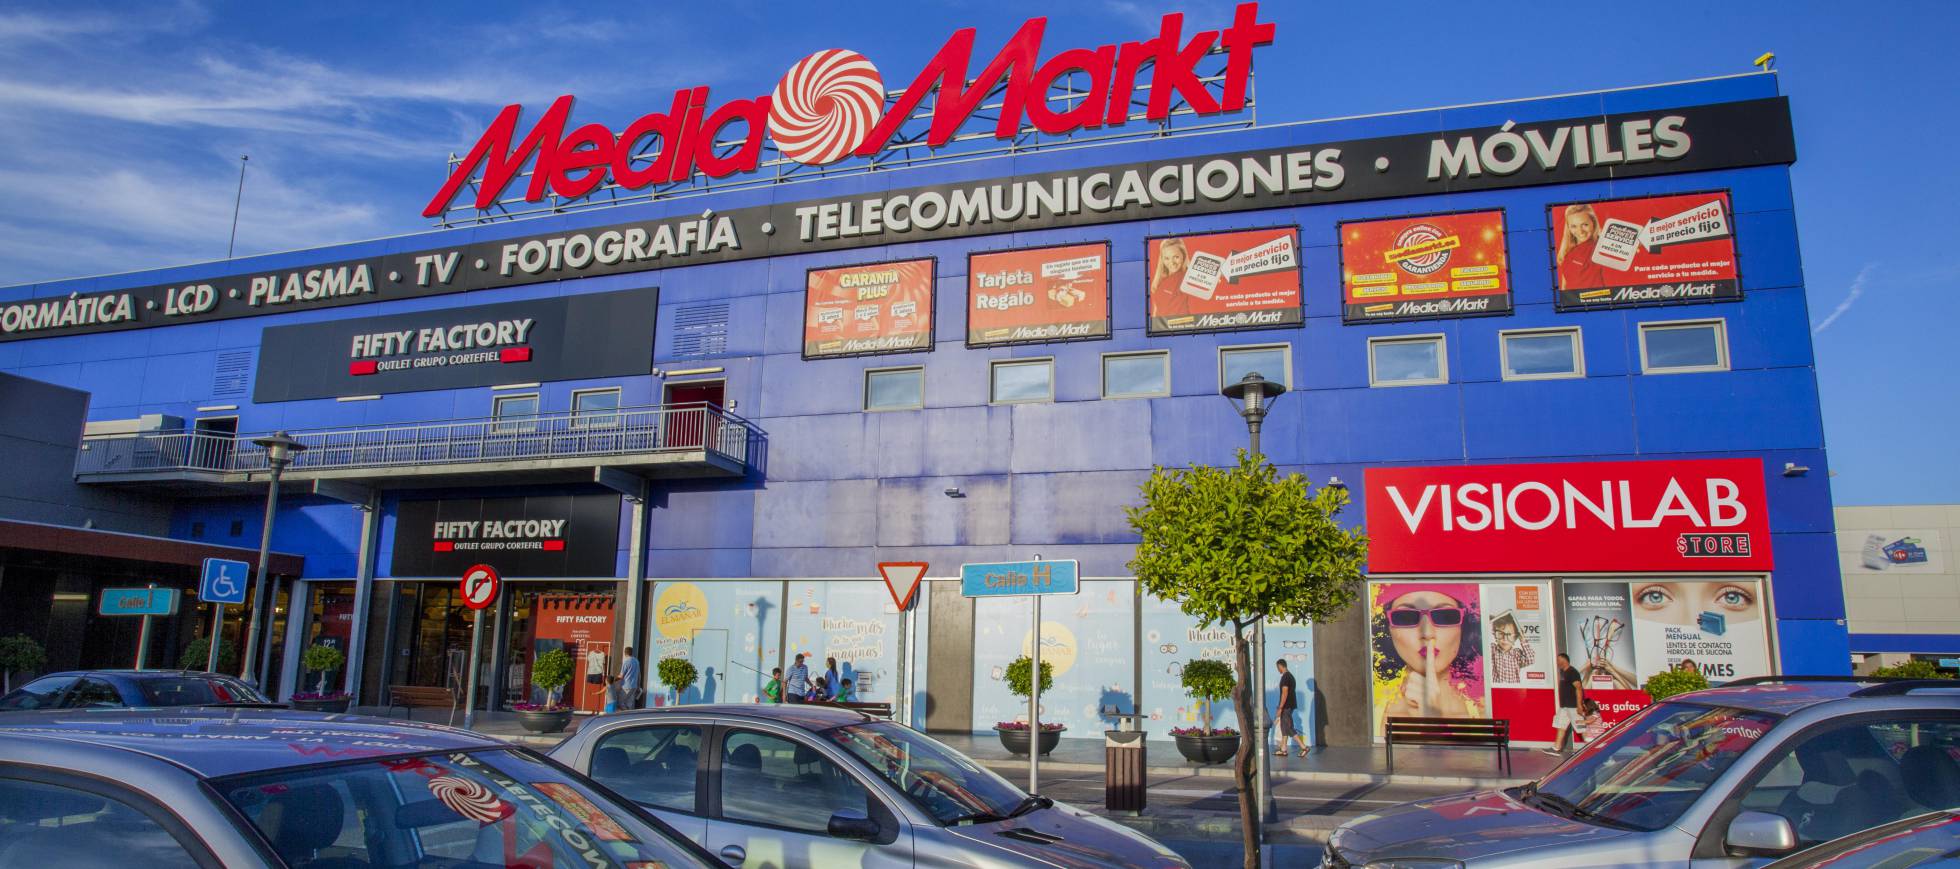 EL Manar Retail Park